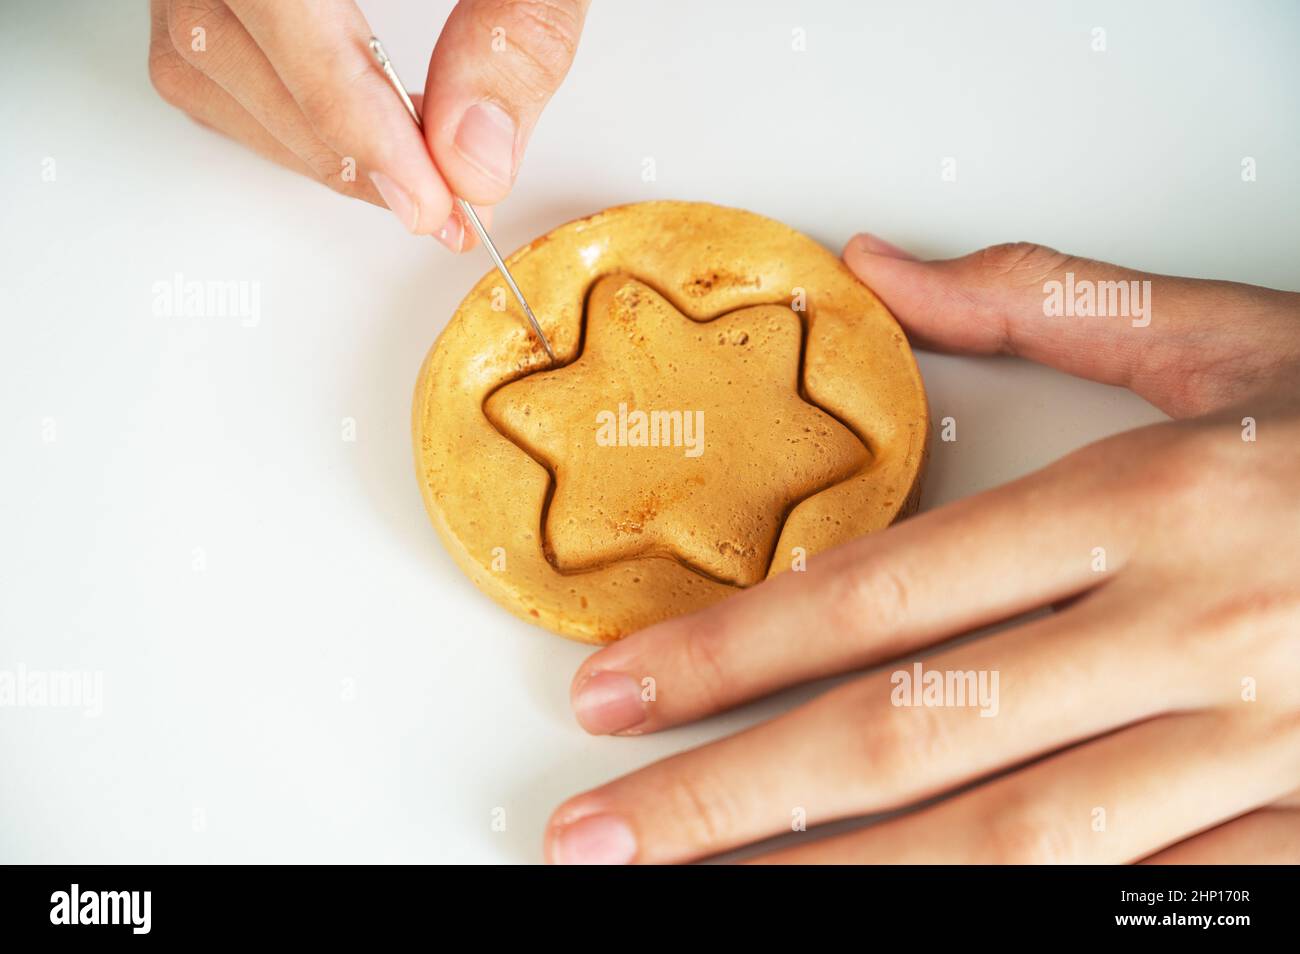 Les mains de gros plan scratch cassent sucre caramel bonbons biscuits avec une aiguille en métal en forme d'étoile sur un fond blanc. Banque D'Images